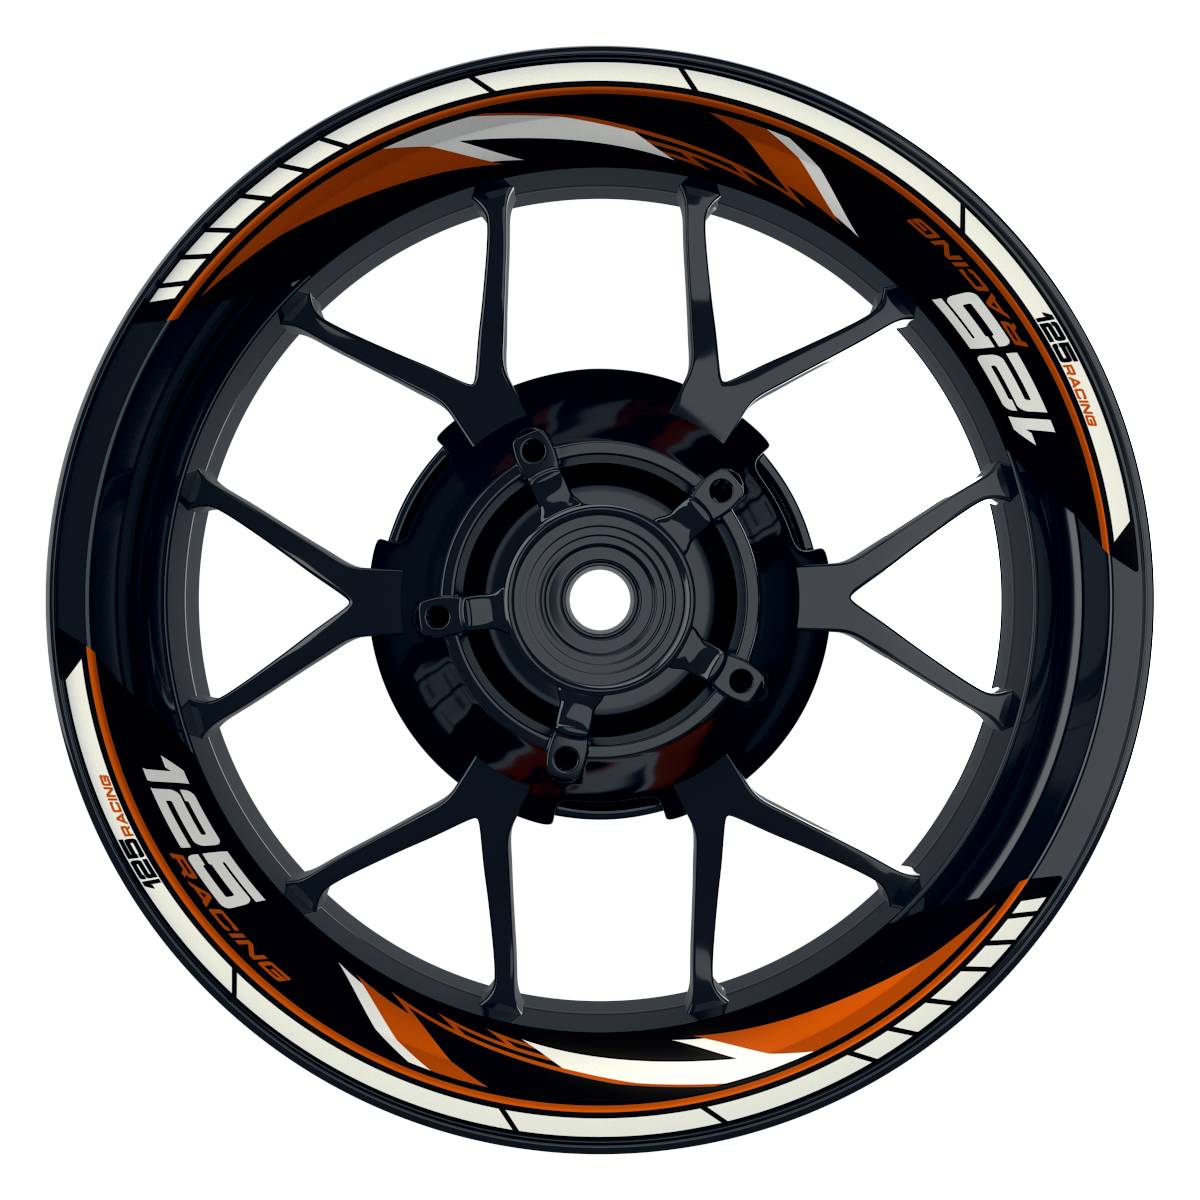 KTM Racing 125 Razor schwarz orange Frontansicht